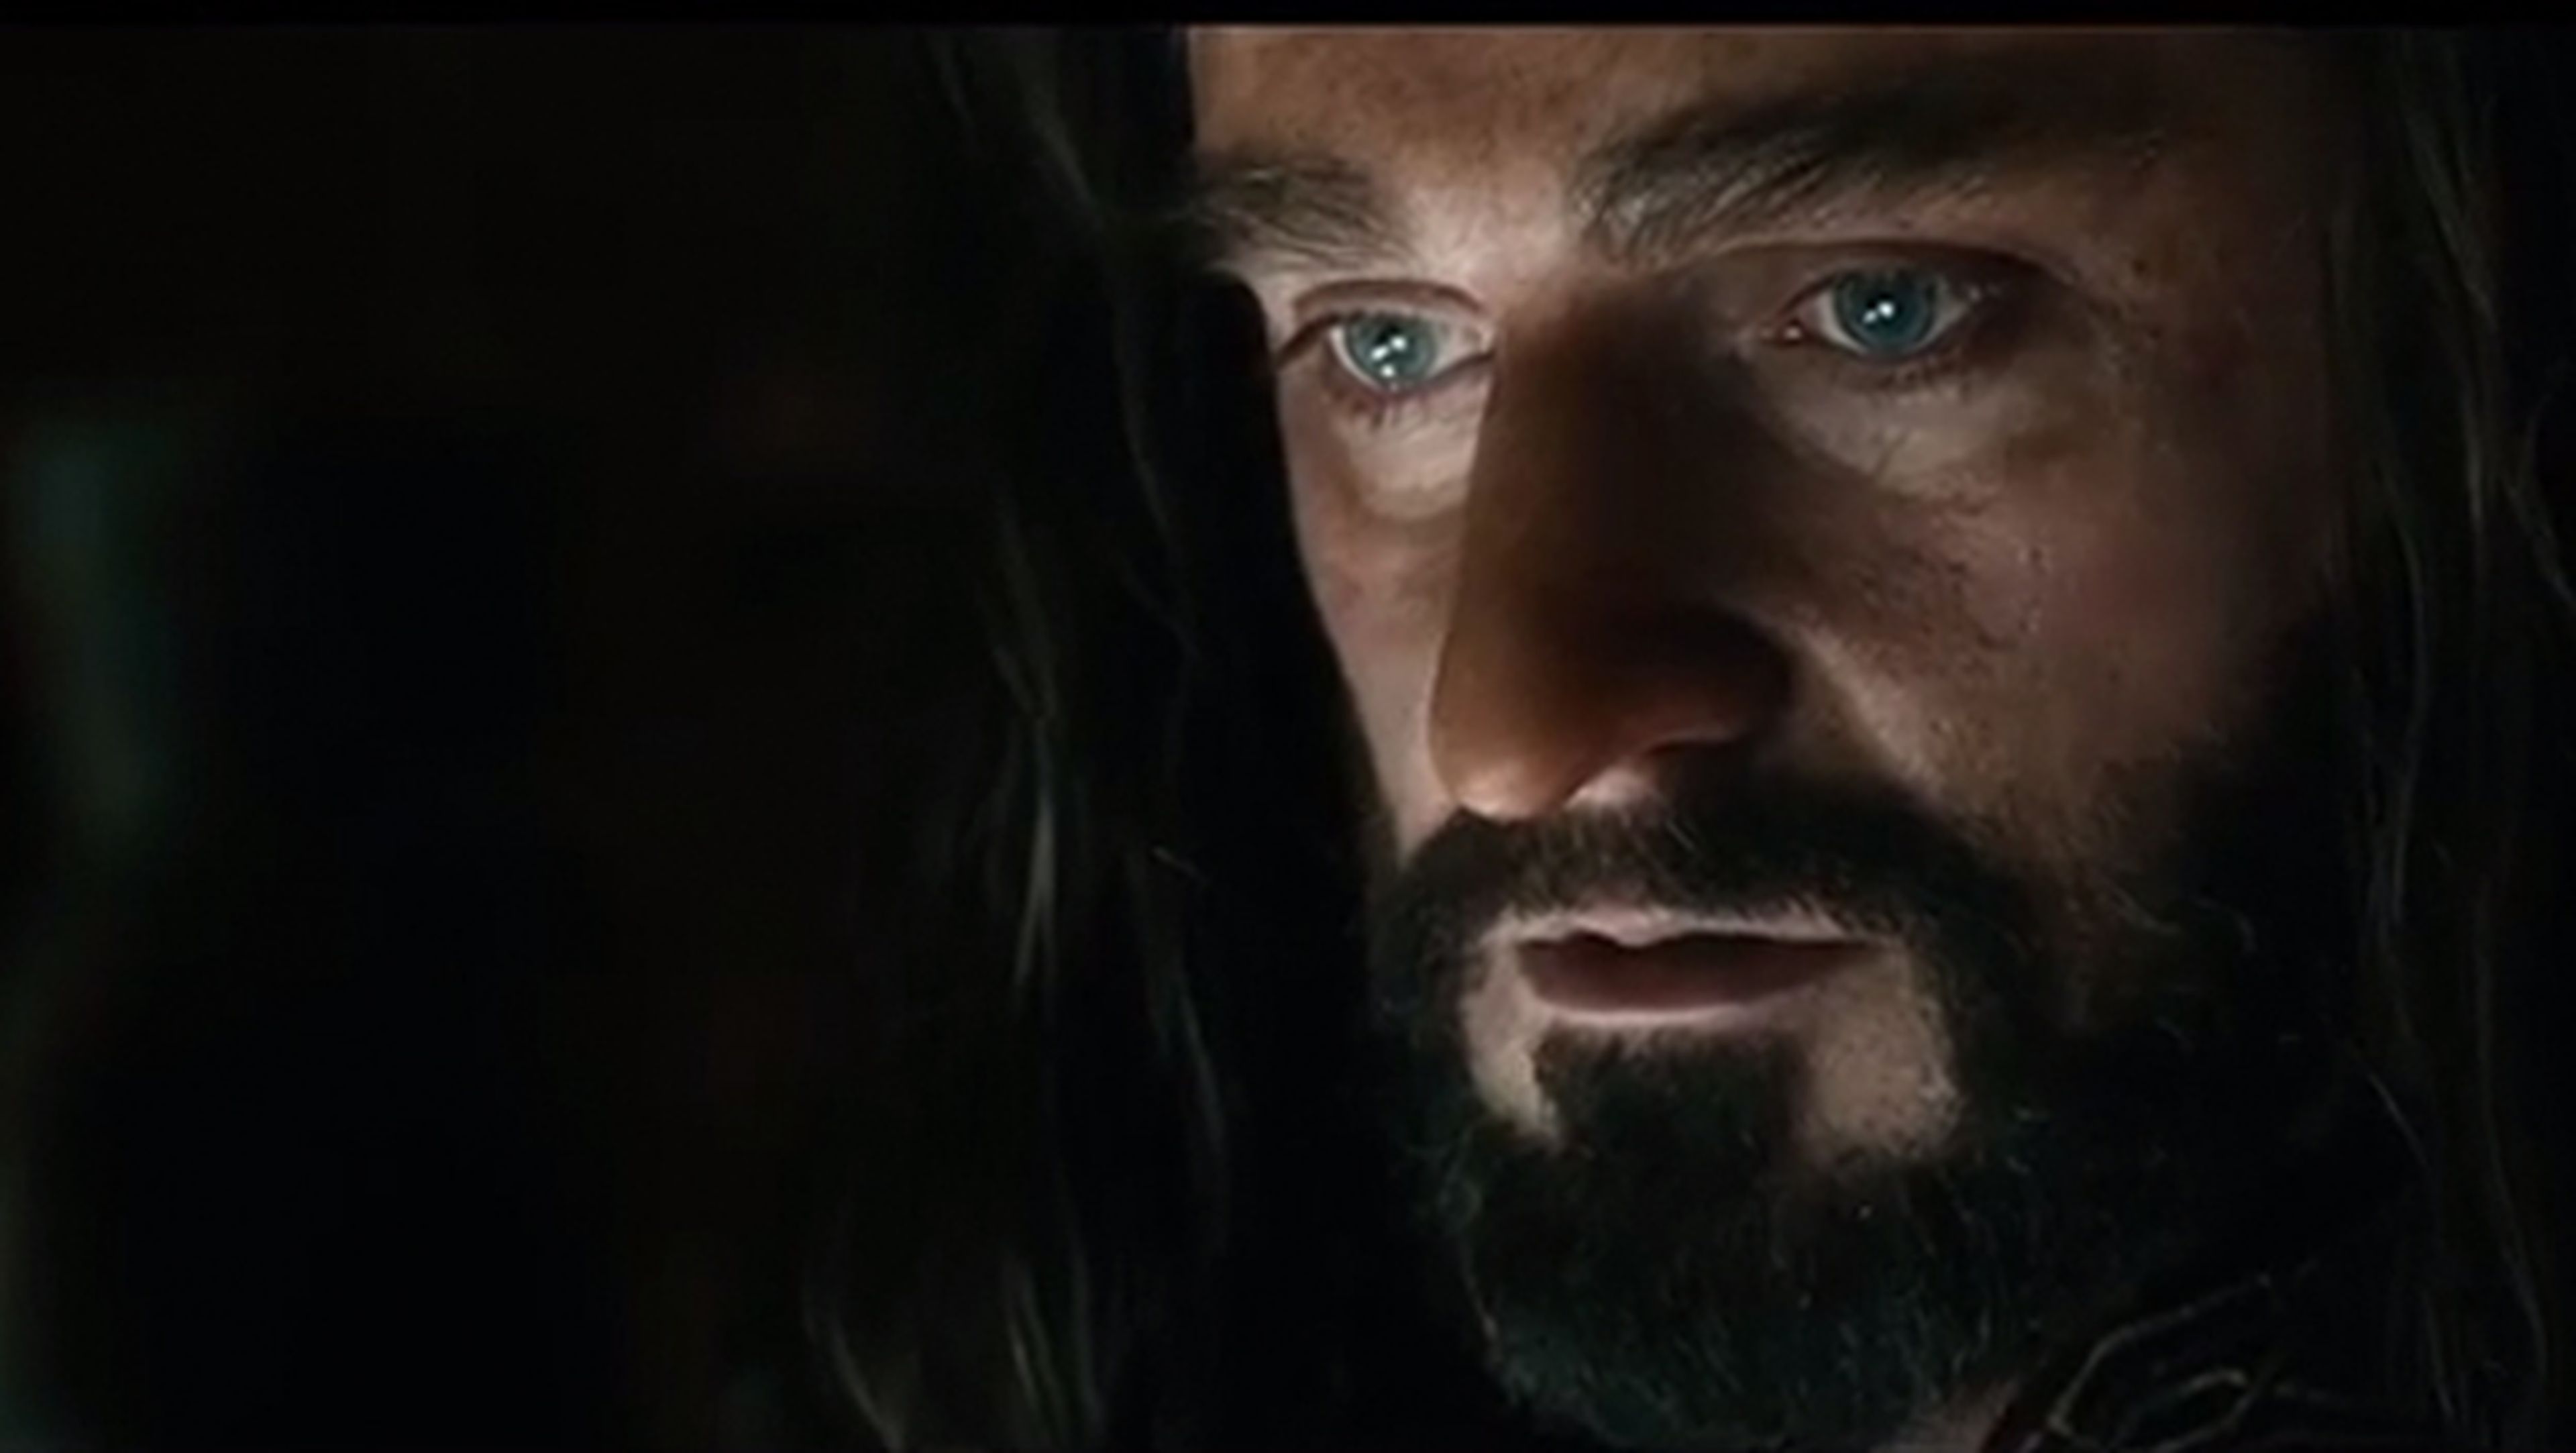 nuevo trailer de El Hobbit: La Batalla de los cinco ejércitos